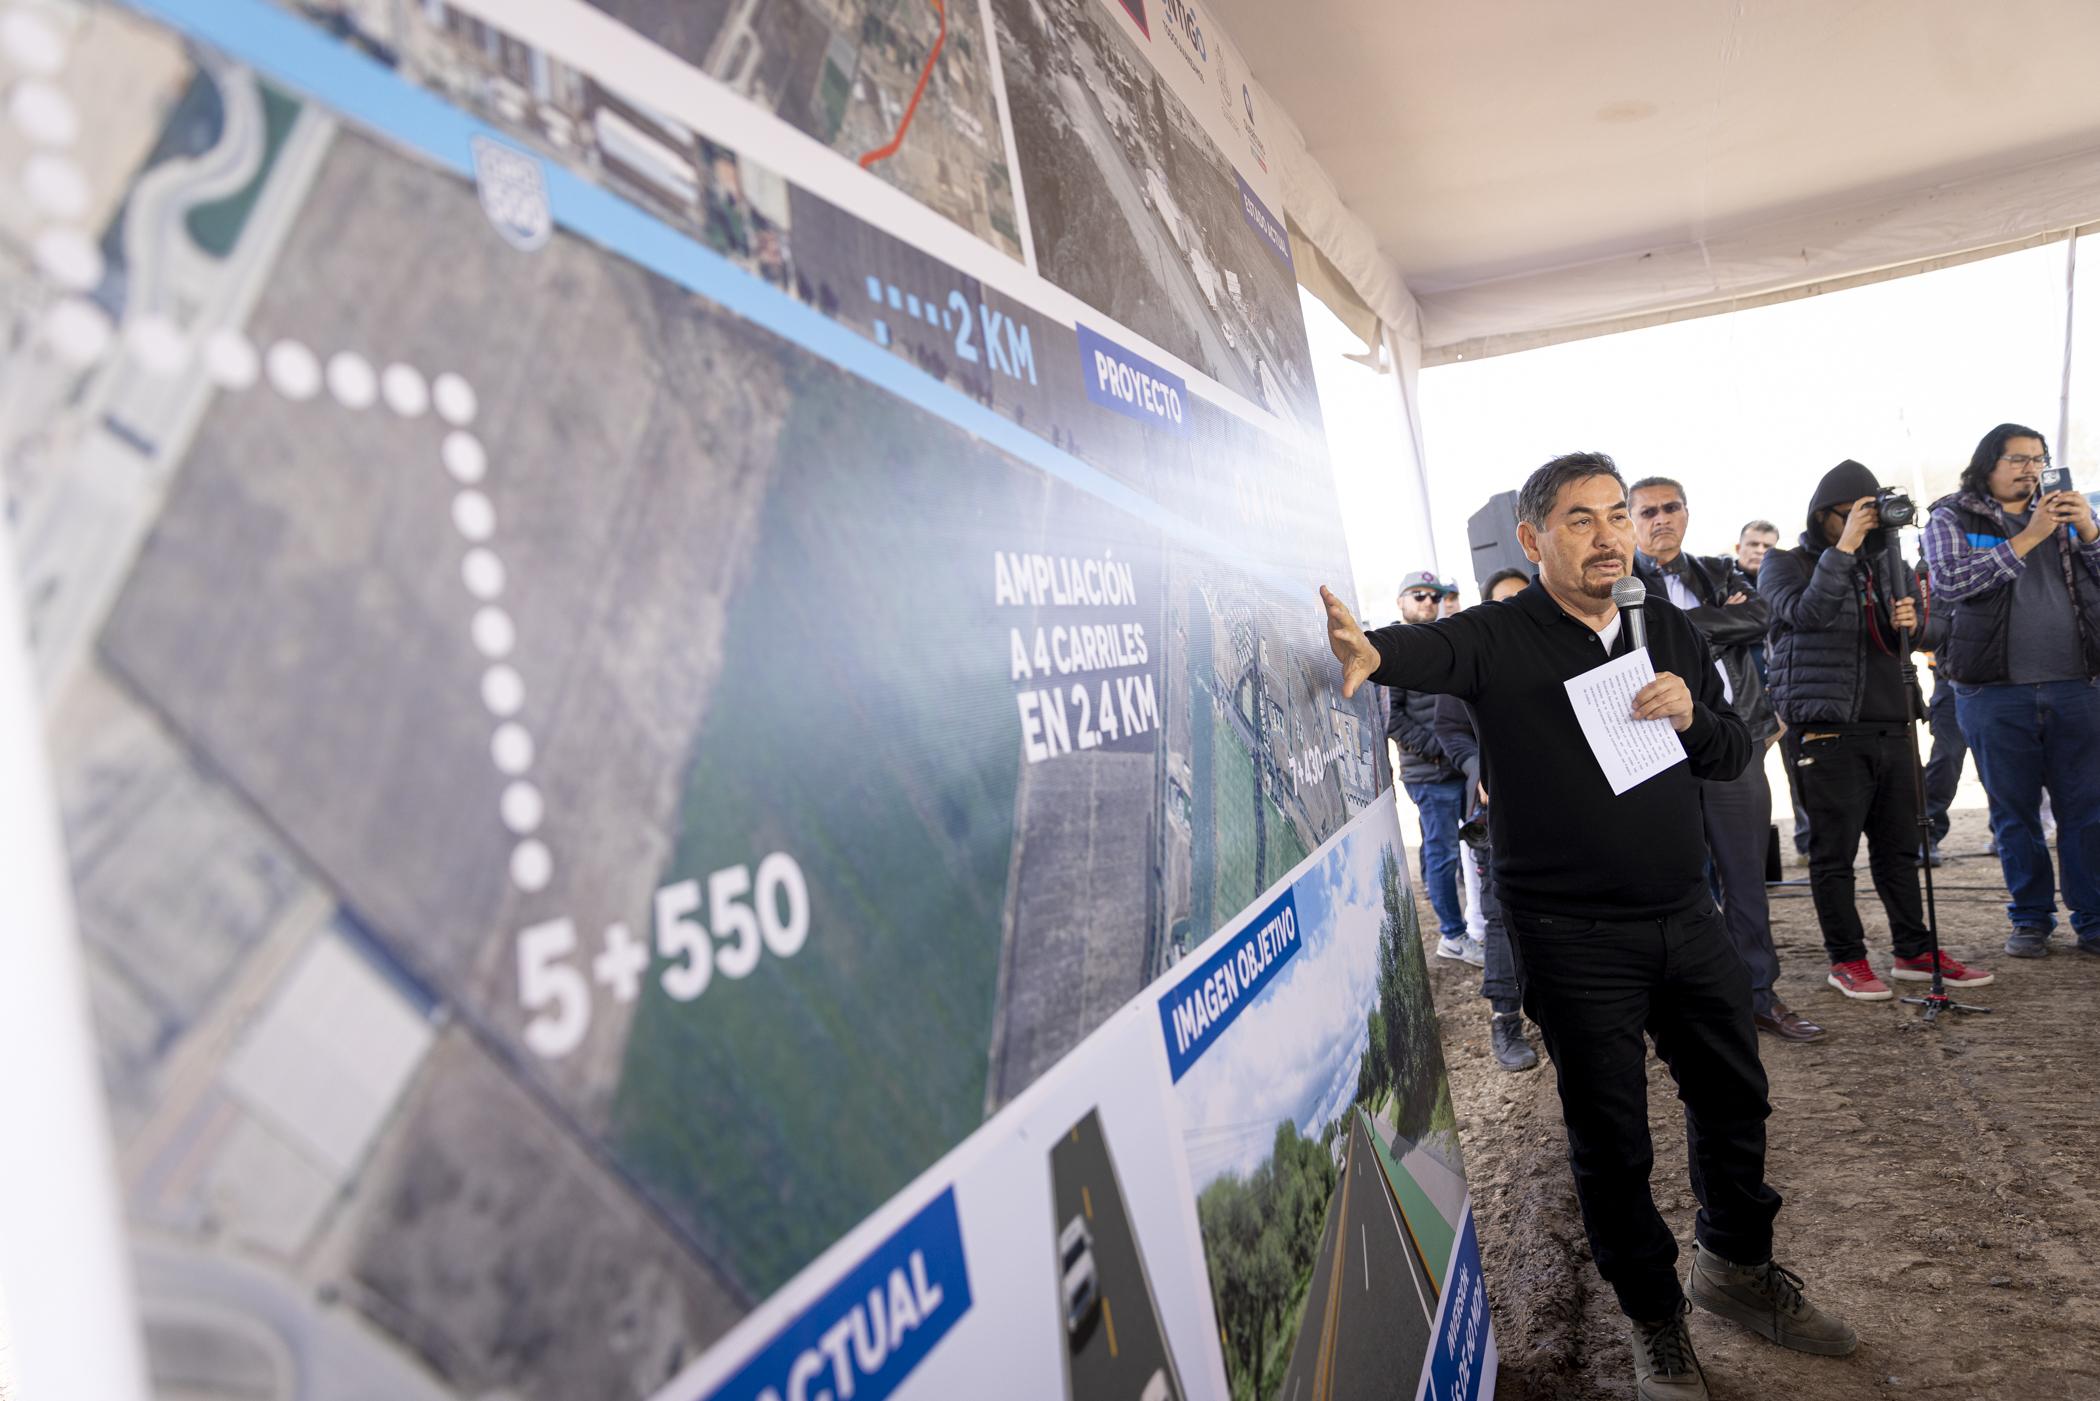 Obras de modernización en la carretera estatal 500; Querétaro. A fin de seguir fortaleciendo la red carretera para la conectividad y el desarrollo